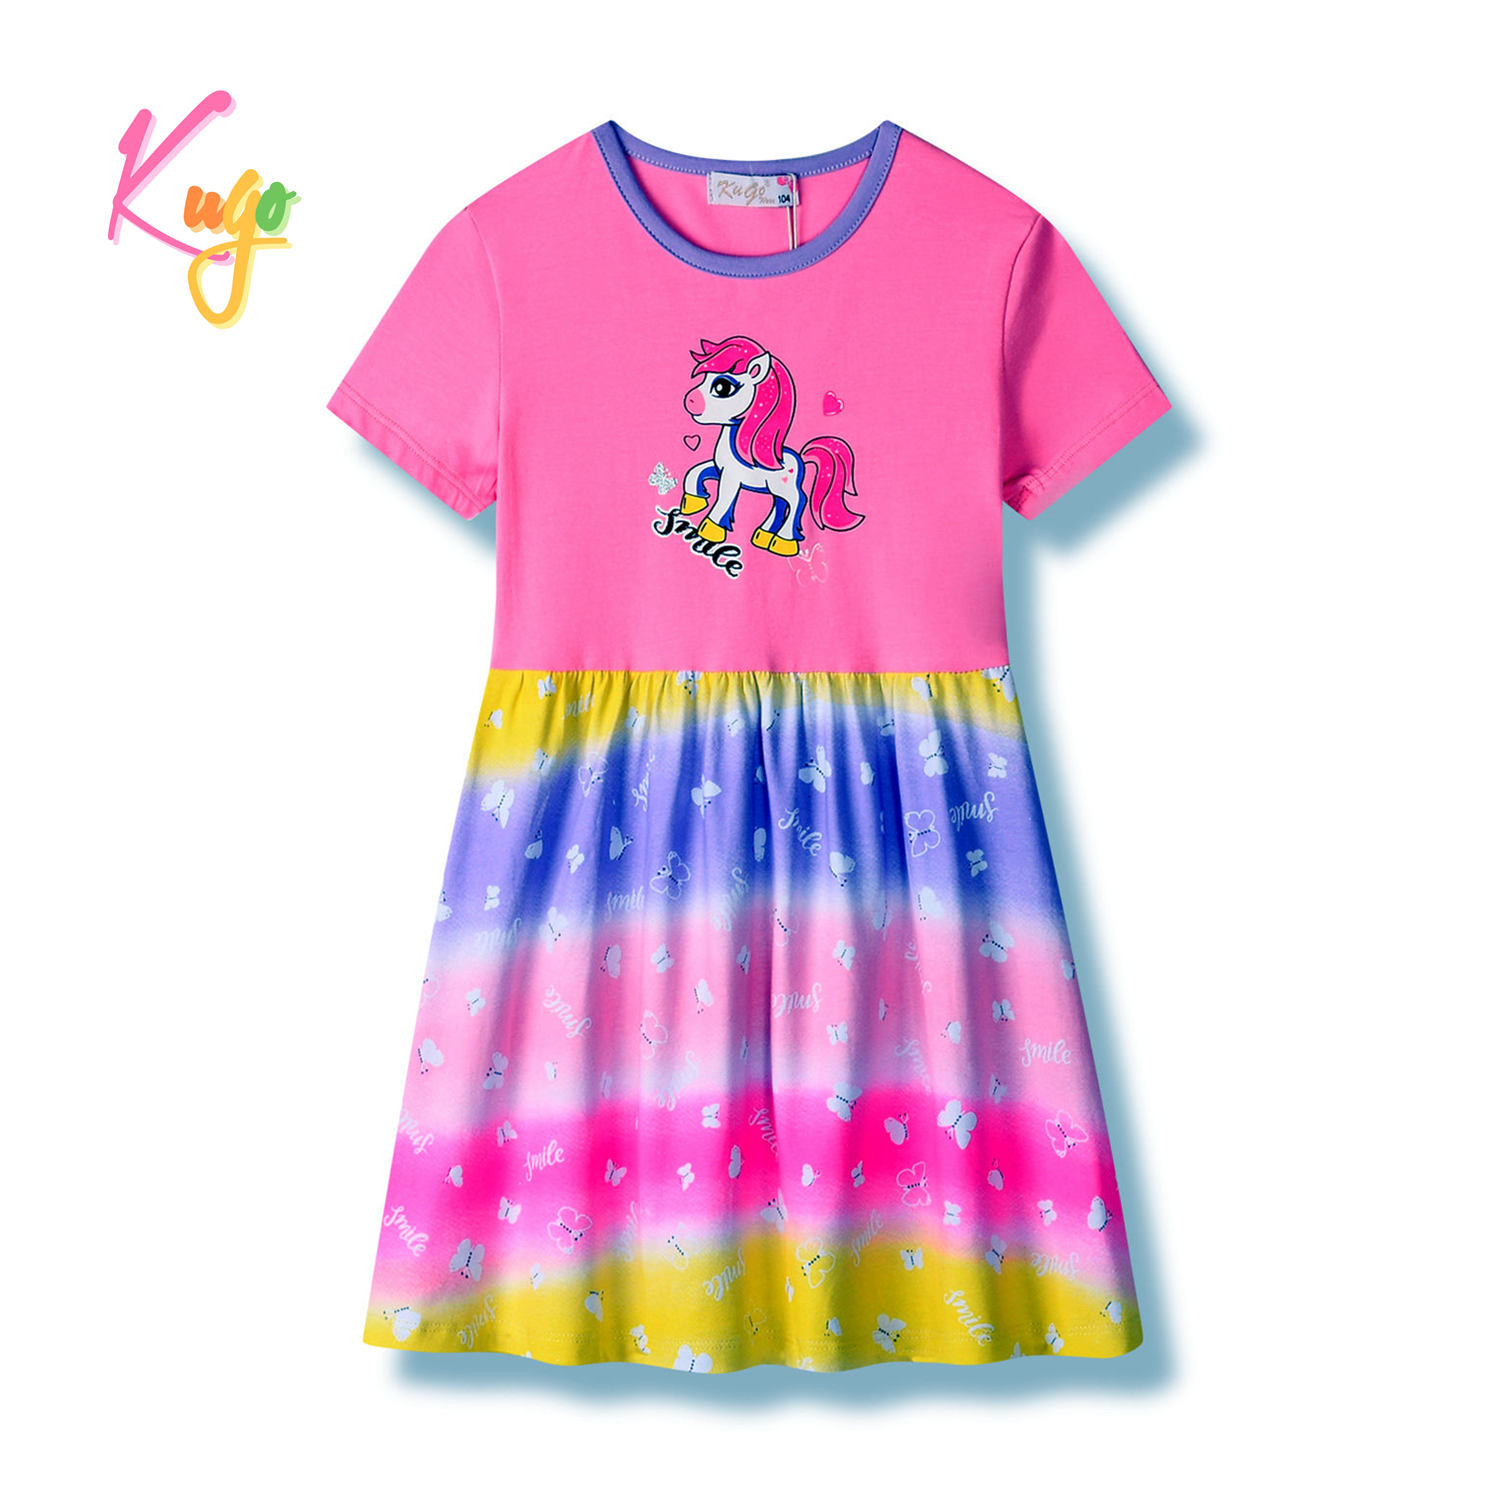 Dívčí šaty - KUGO HS9286, sytě růžová Barva: Růžová, Velikost: 104